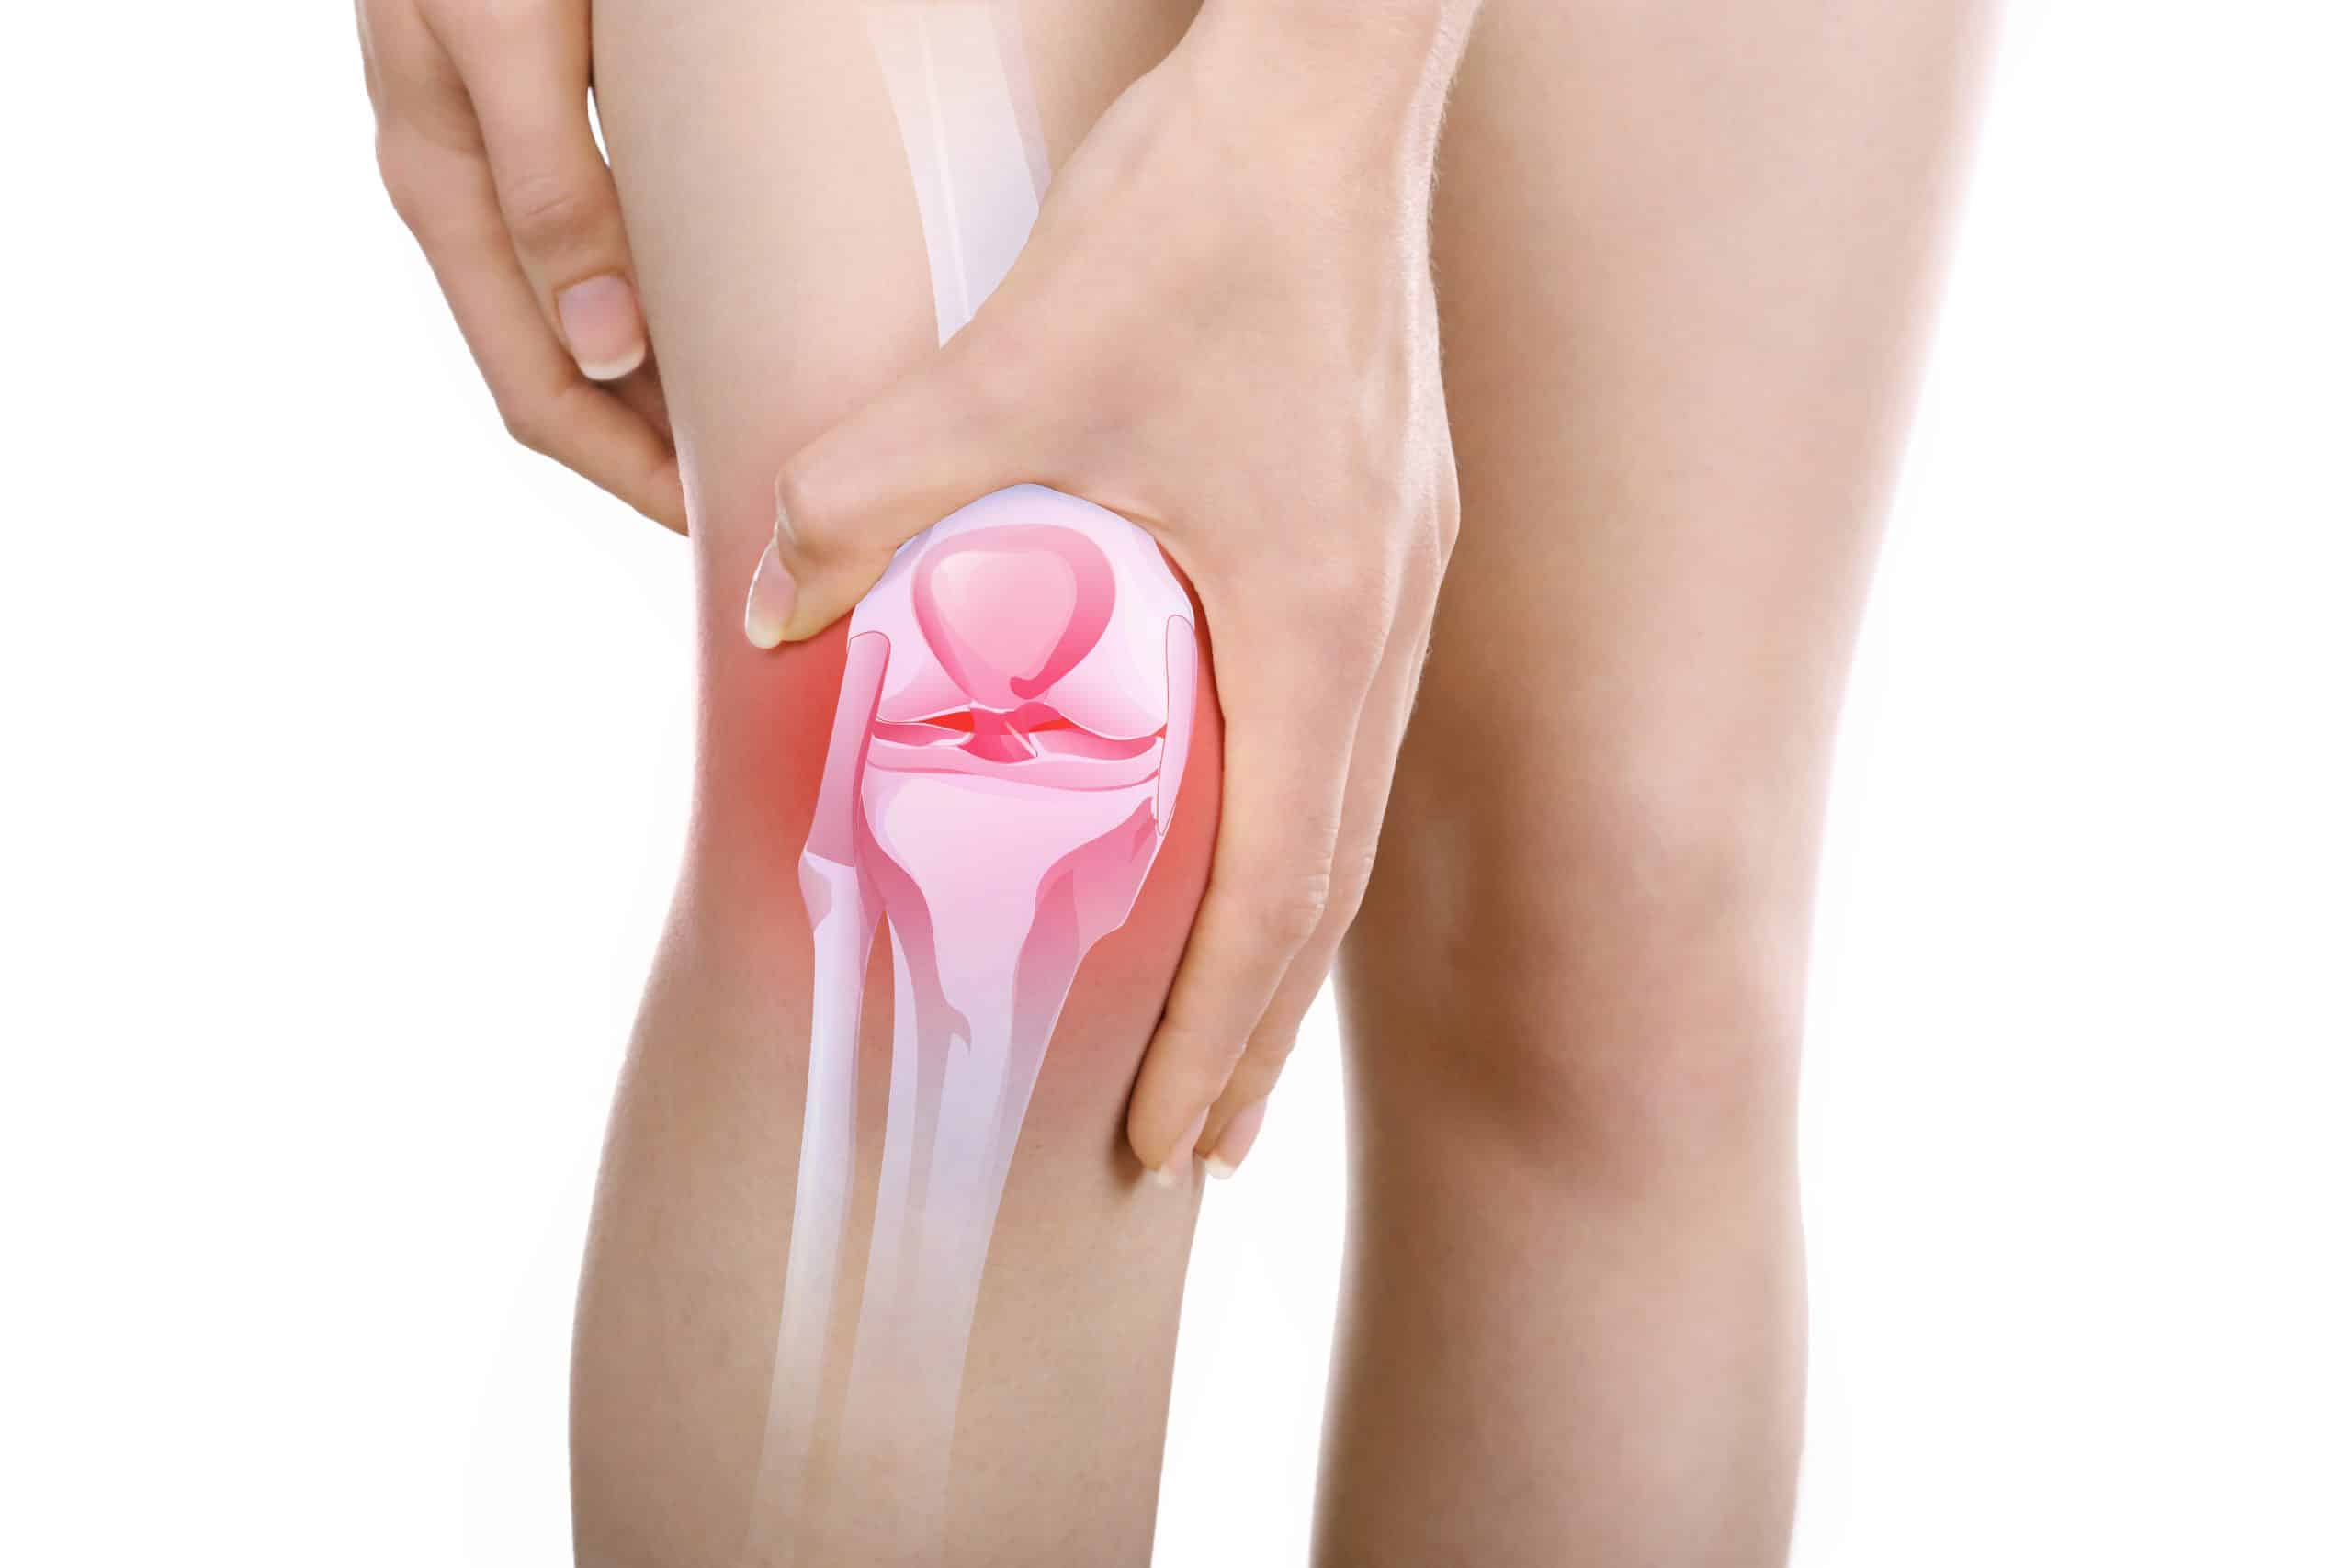 uzrok boli u zglobu koljena desne noge bol u zglobu kojem liječniku